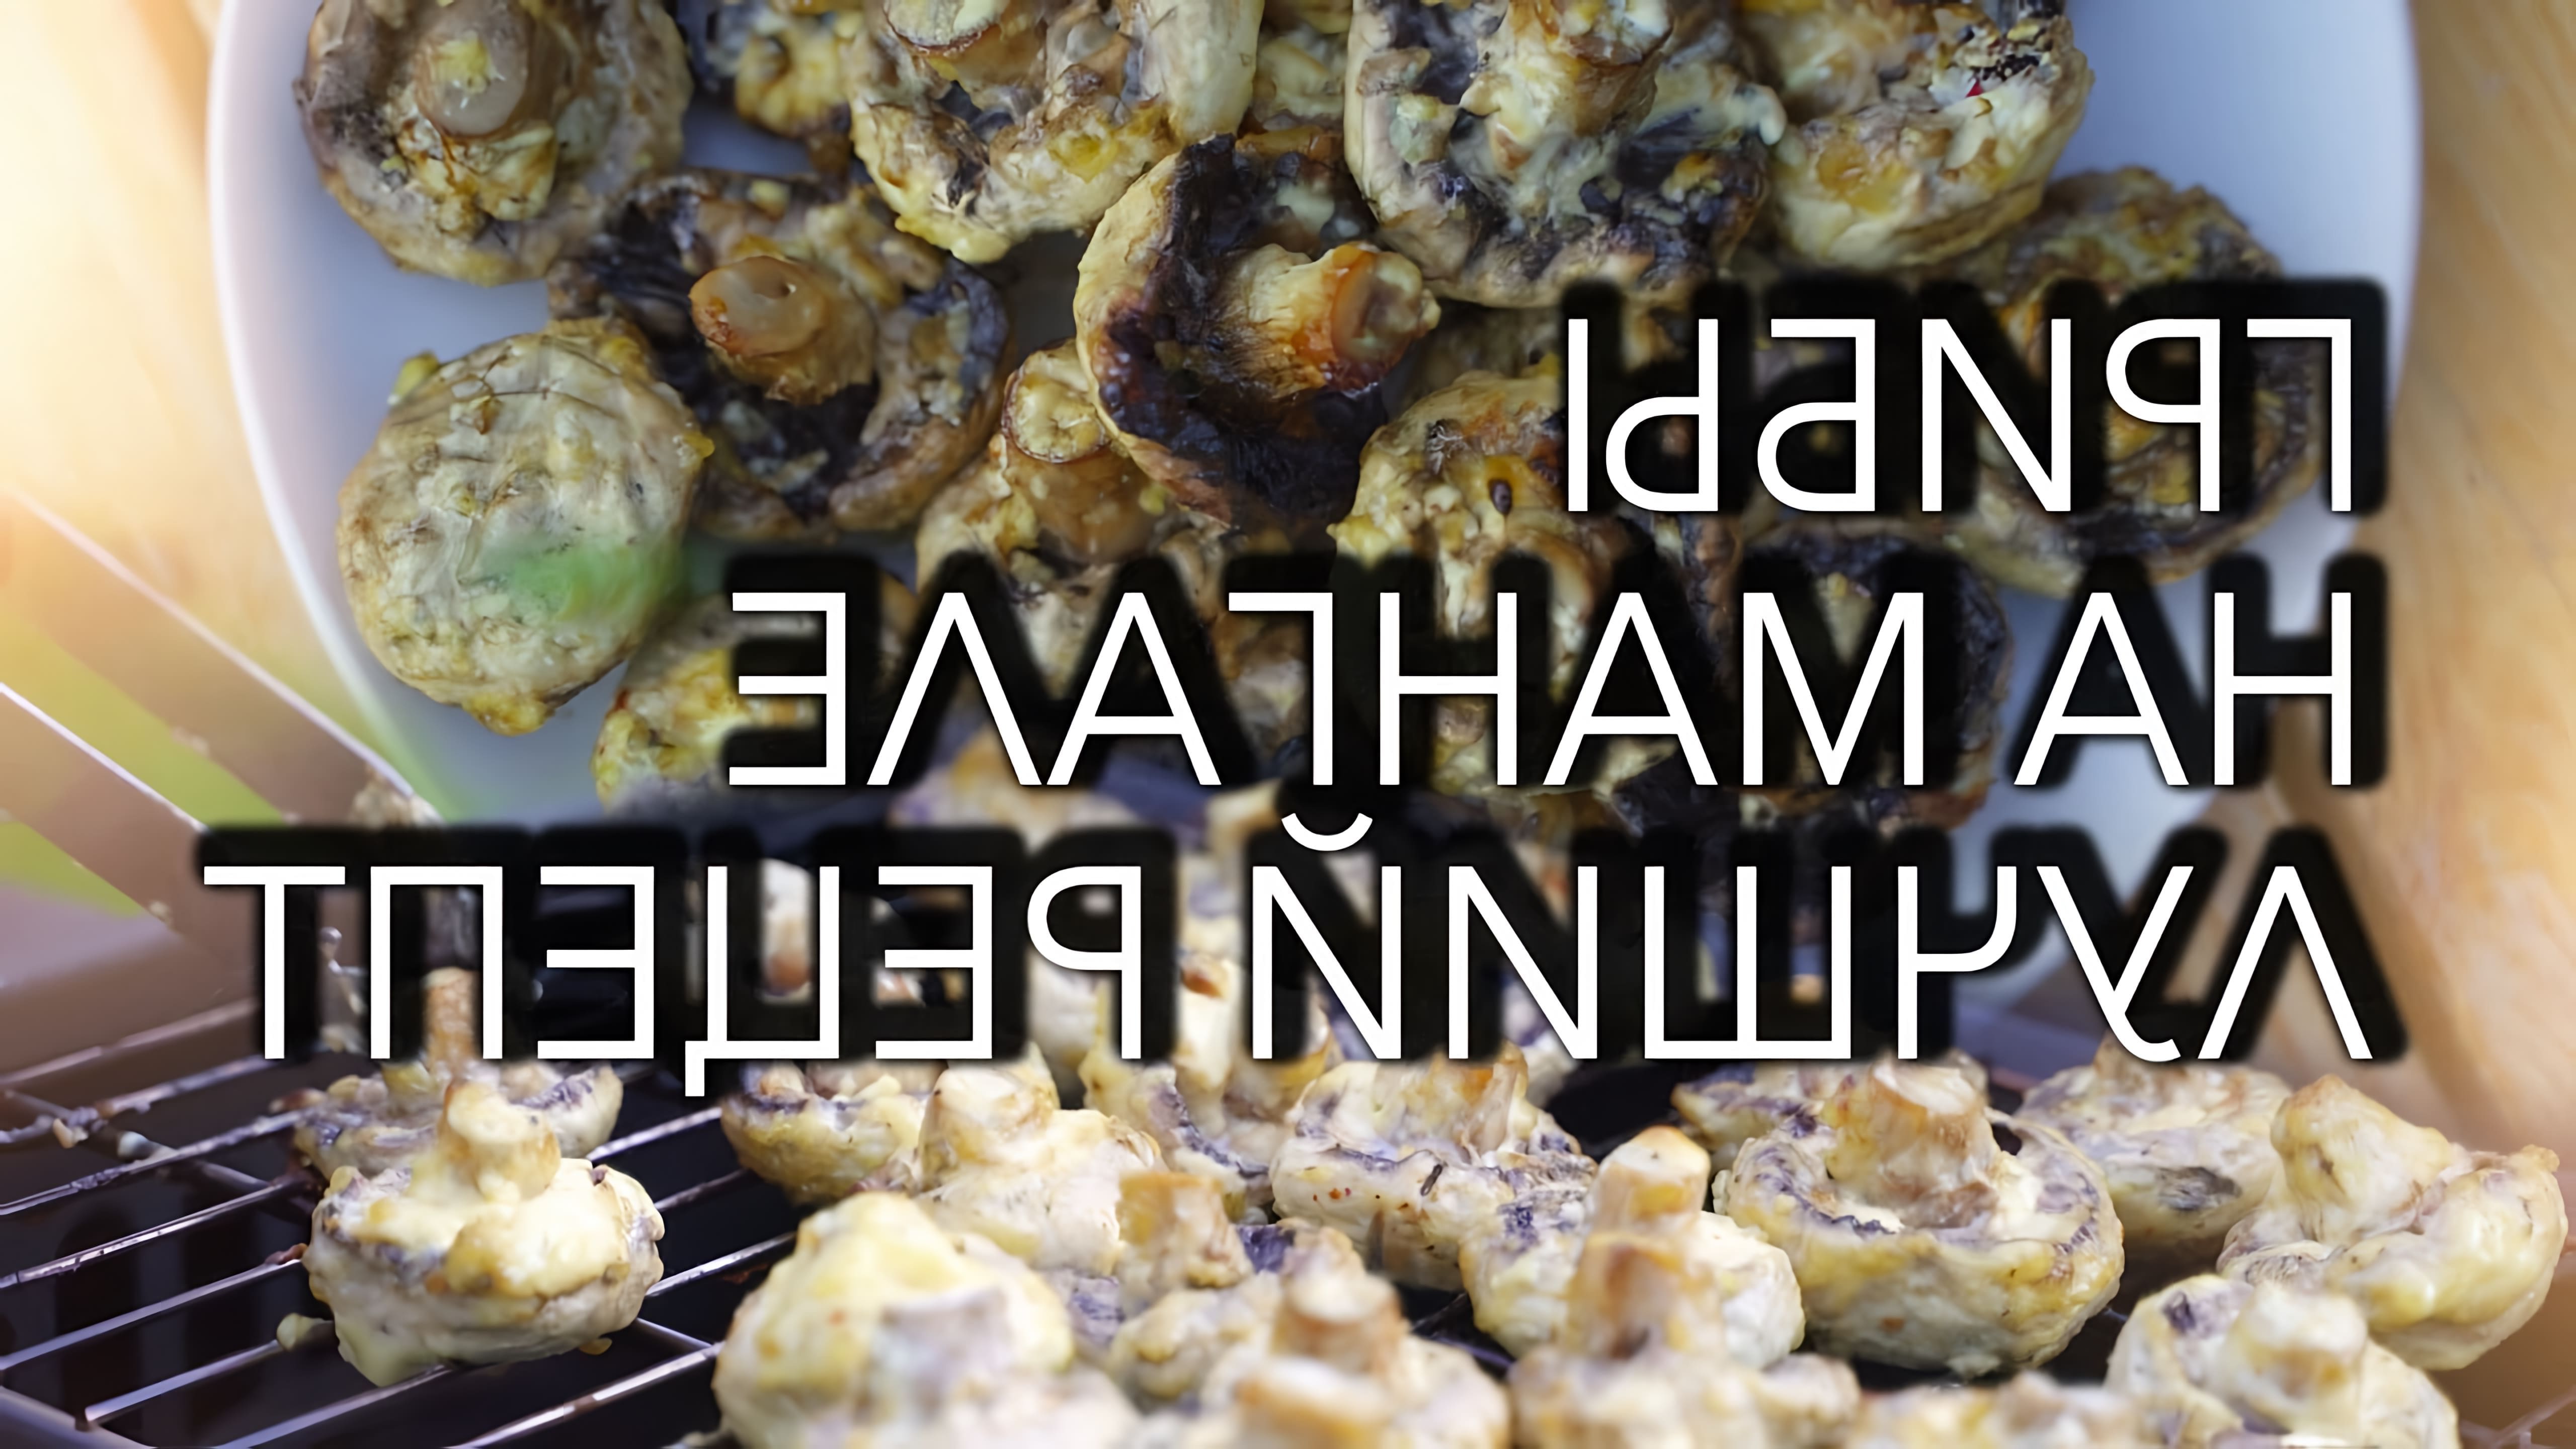 В этом видео демонстрируется рецепт приготовления шампиньонов на мангале